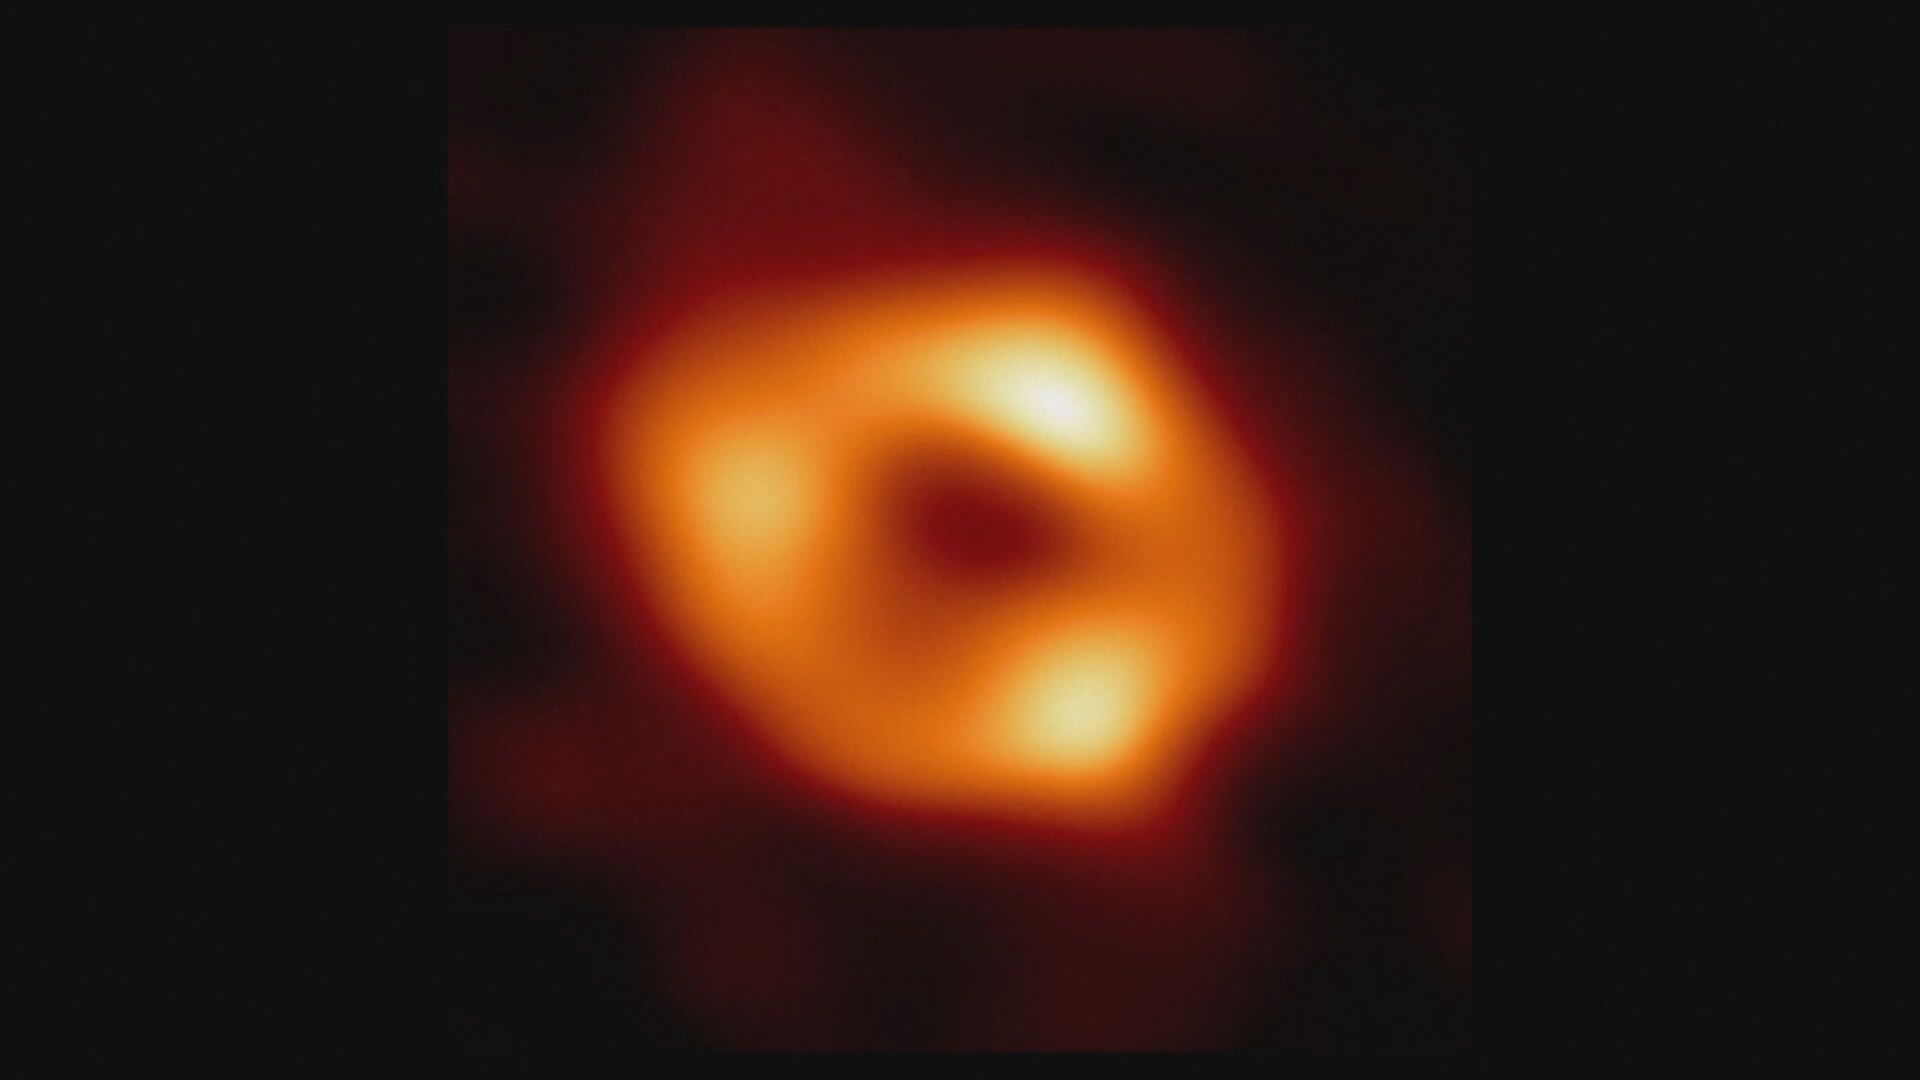 銀河系中心黑洞照片首次曝光